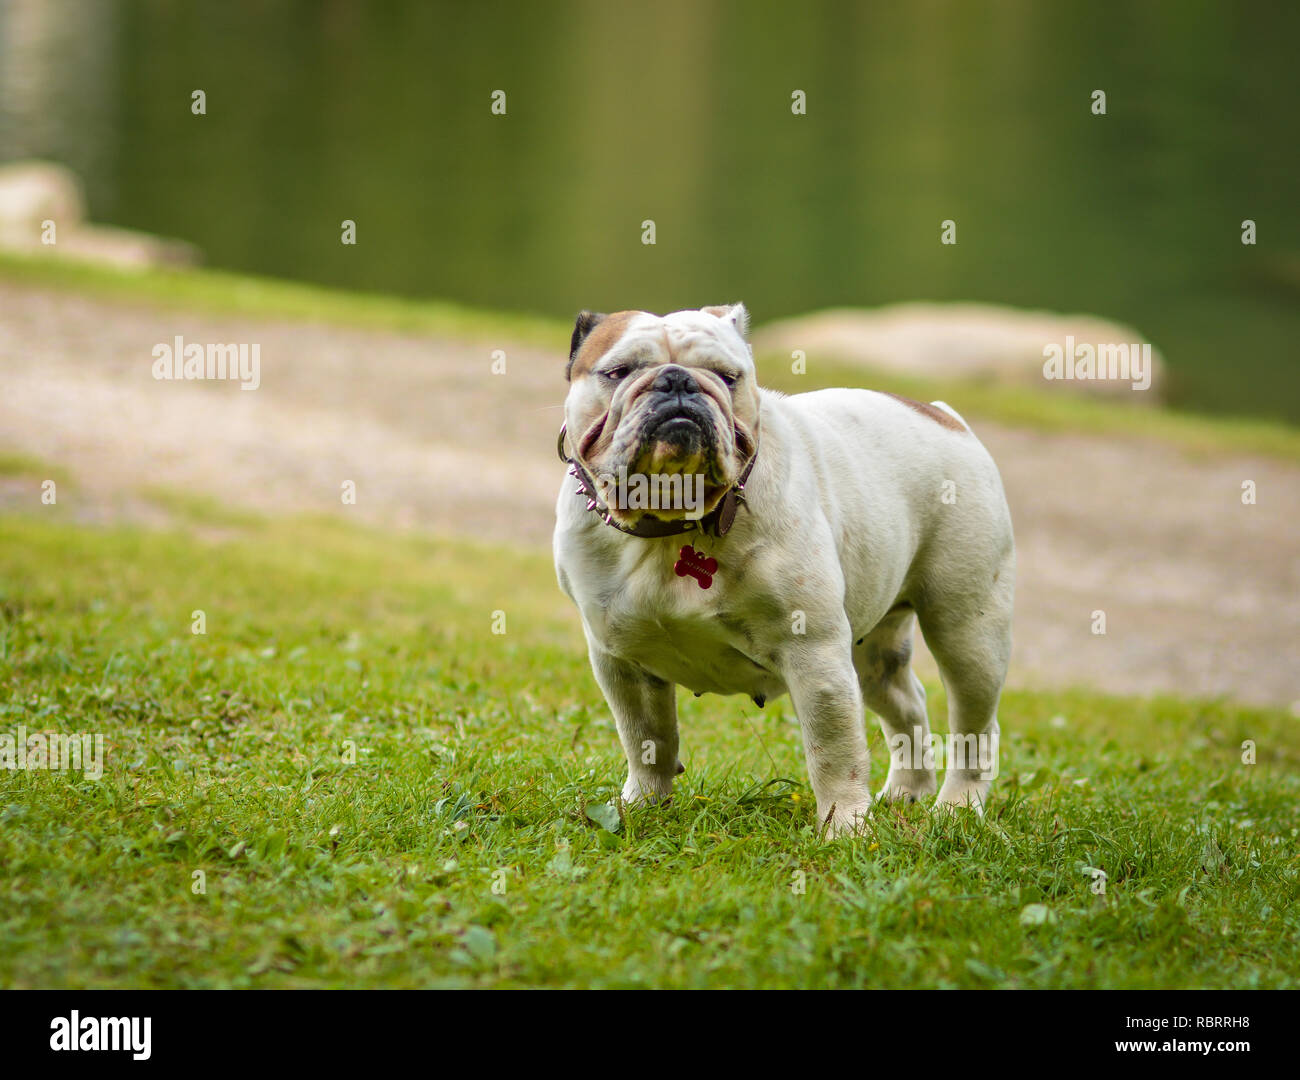 Un brun et blanc Bulldog anglais d'exécution sur la pelouse à la fois ludique et joyeux. Le Bulldog est un chien très musclé, avec un visage ridé et d'une di Banque D'Images